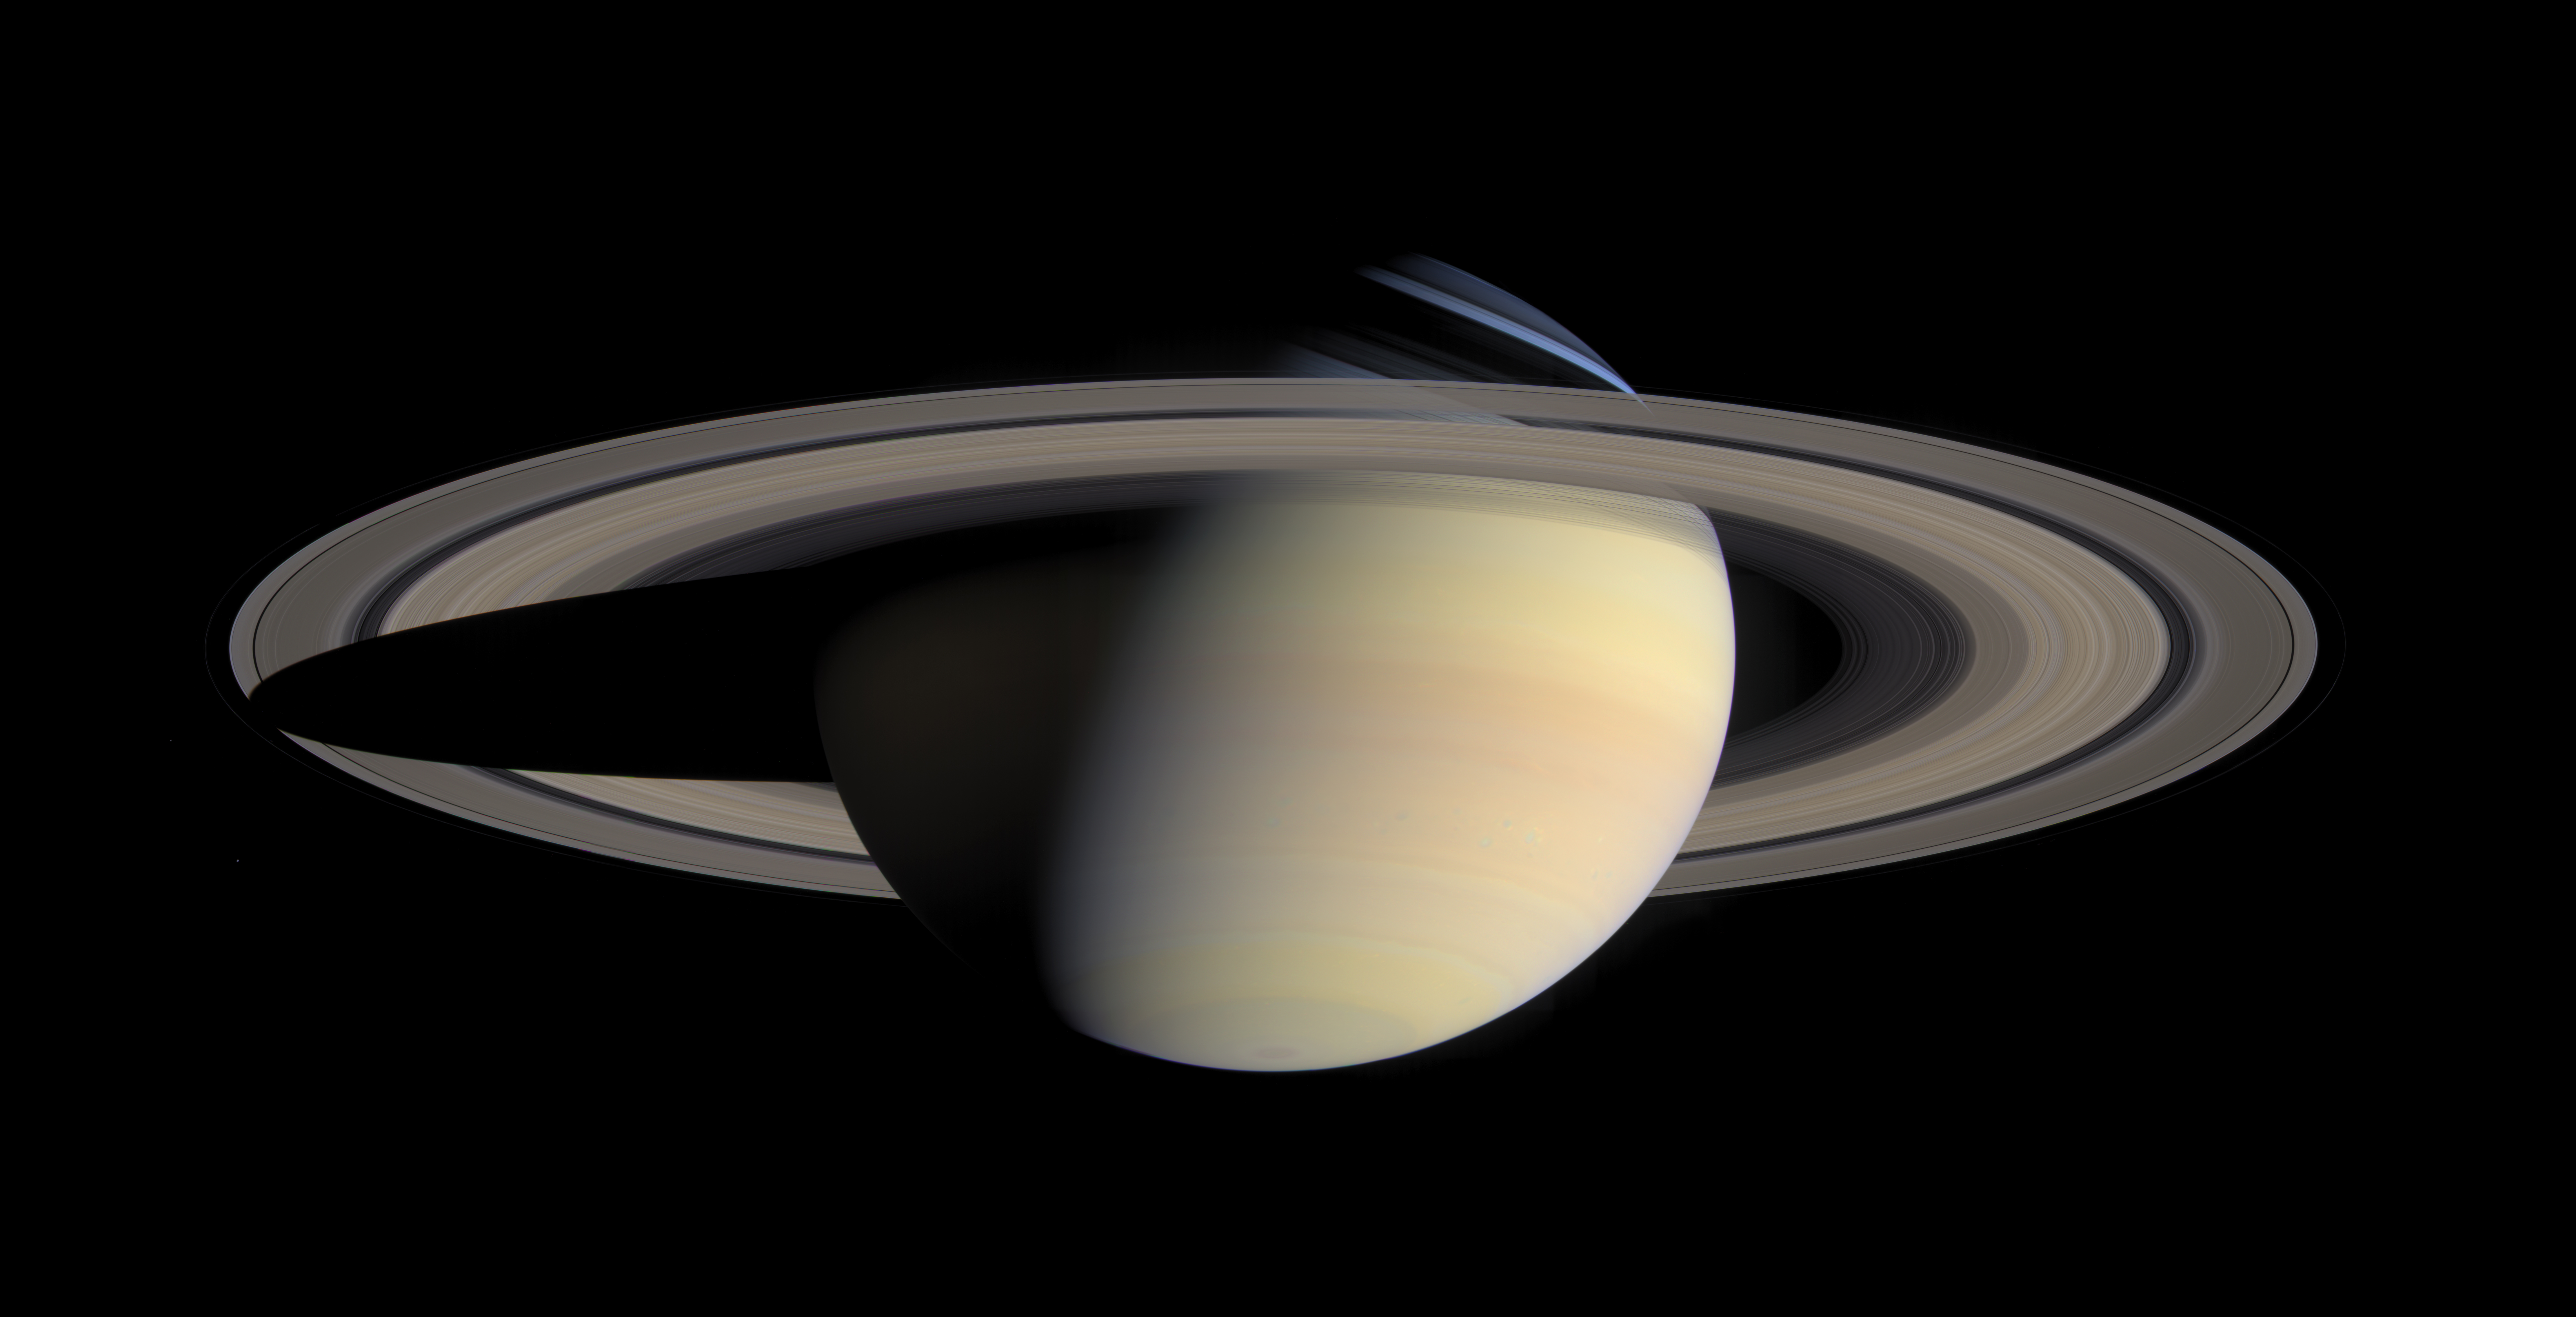 Descarga gratuita de fondo de pantalla para móvil de Ciencia Ficción, Saturno.